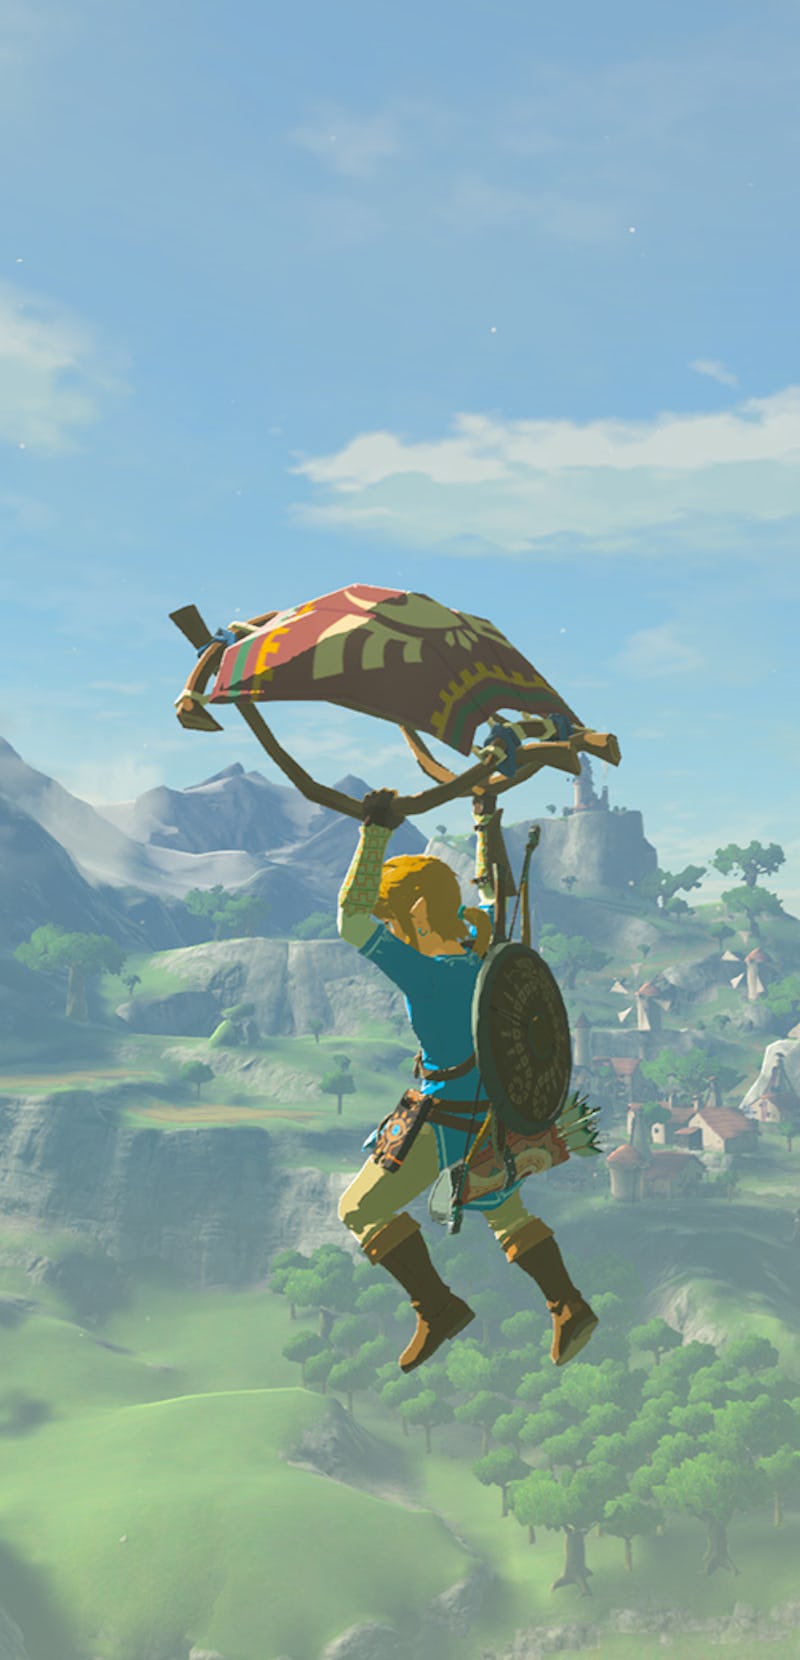 Screenshot of Link flying in The Legend of Zelda Breath of the Wild